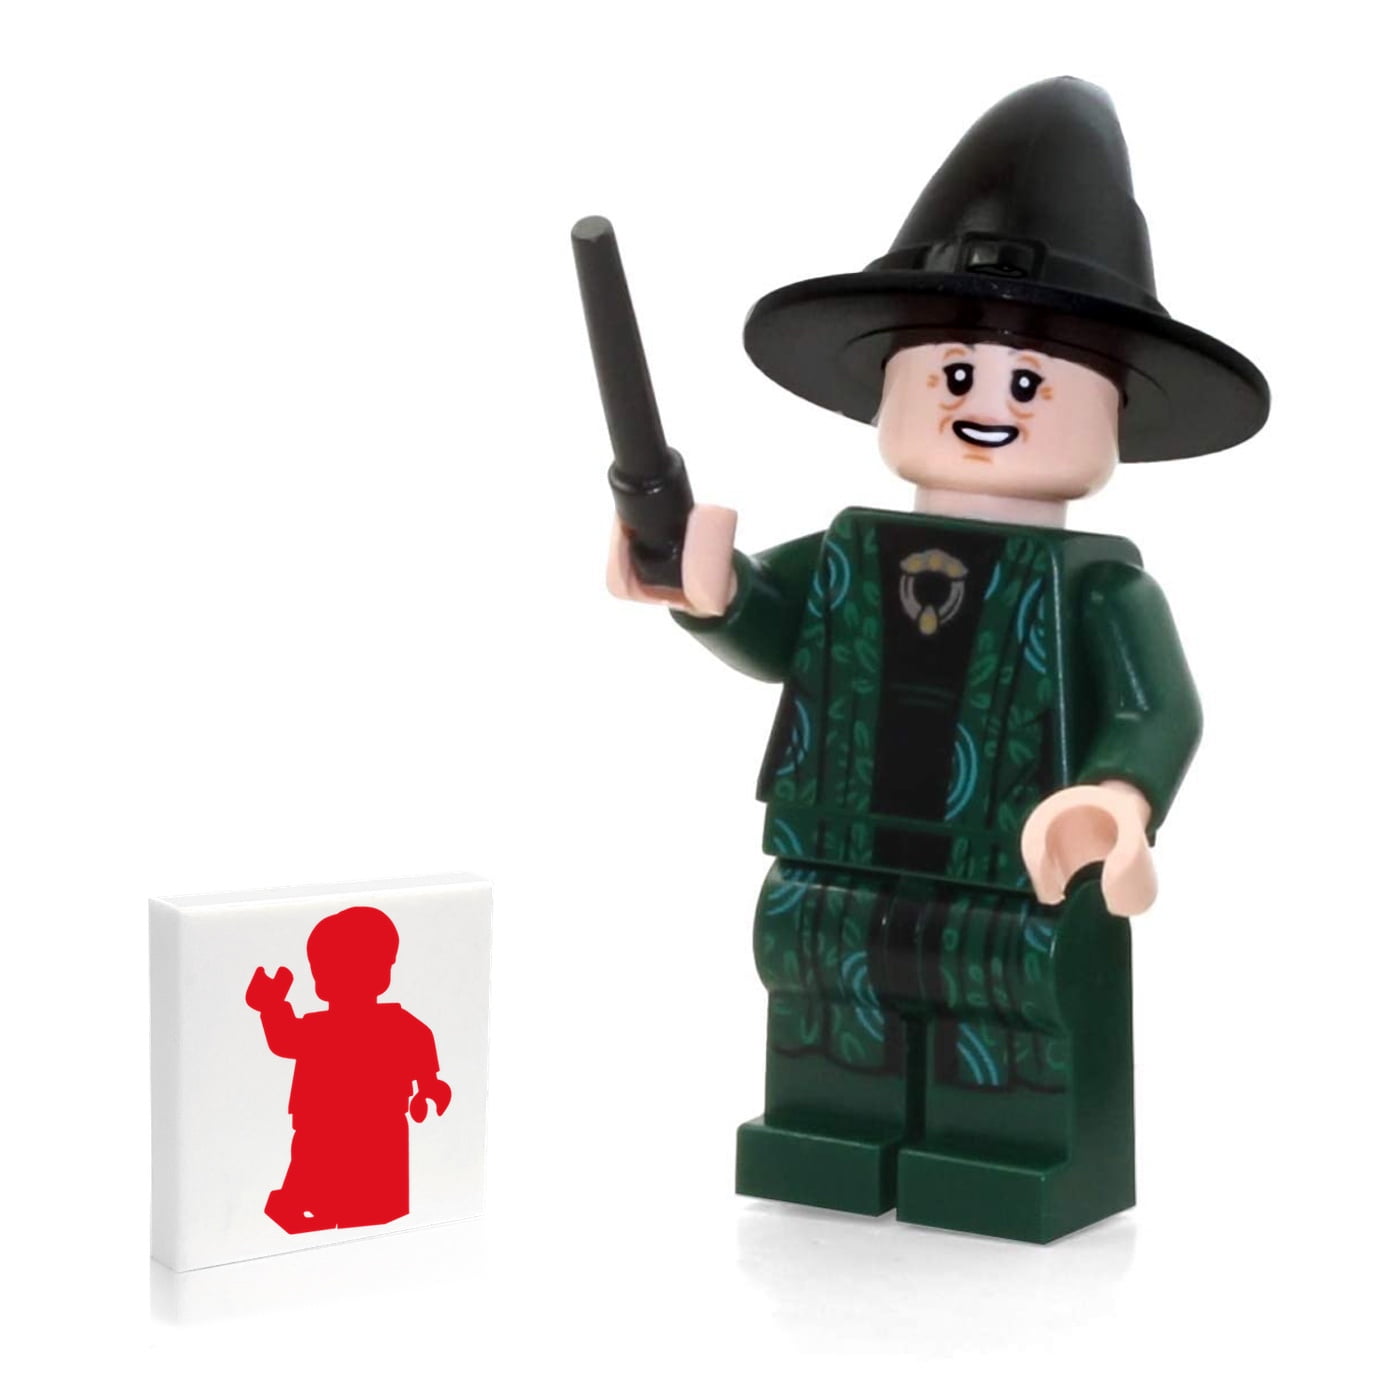 Lego Harry Potter Hogwarts Professor Minerva McGonagall Minifigure 75954 